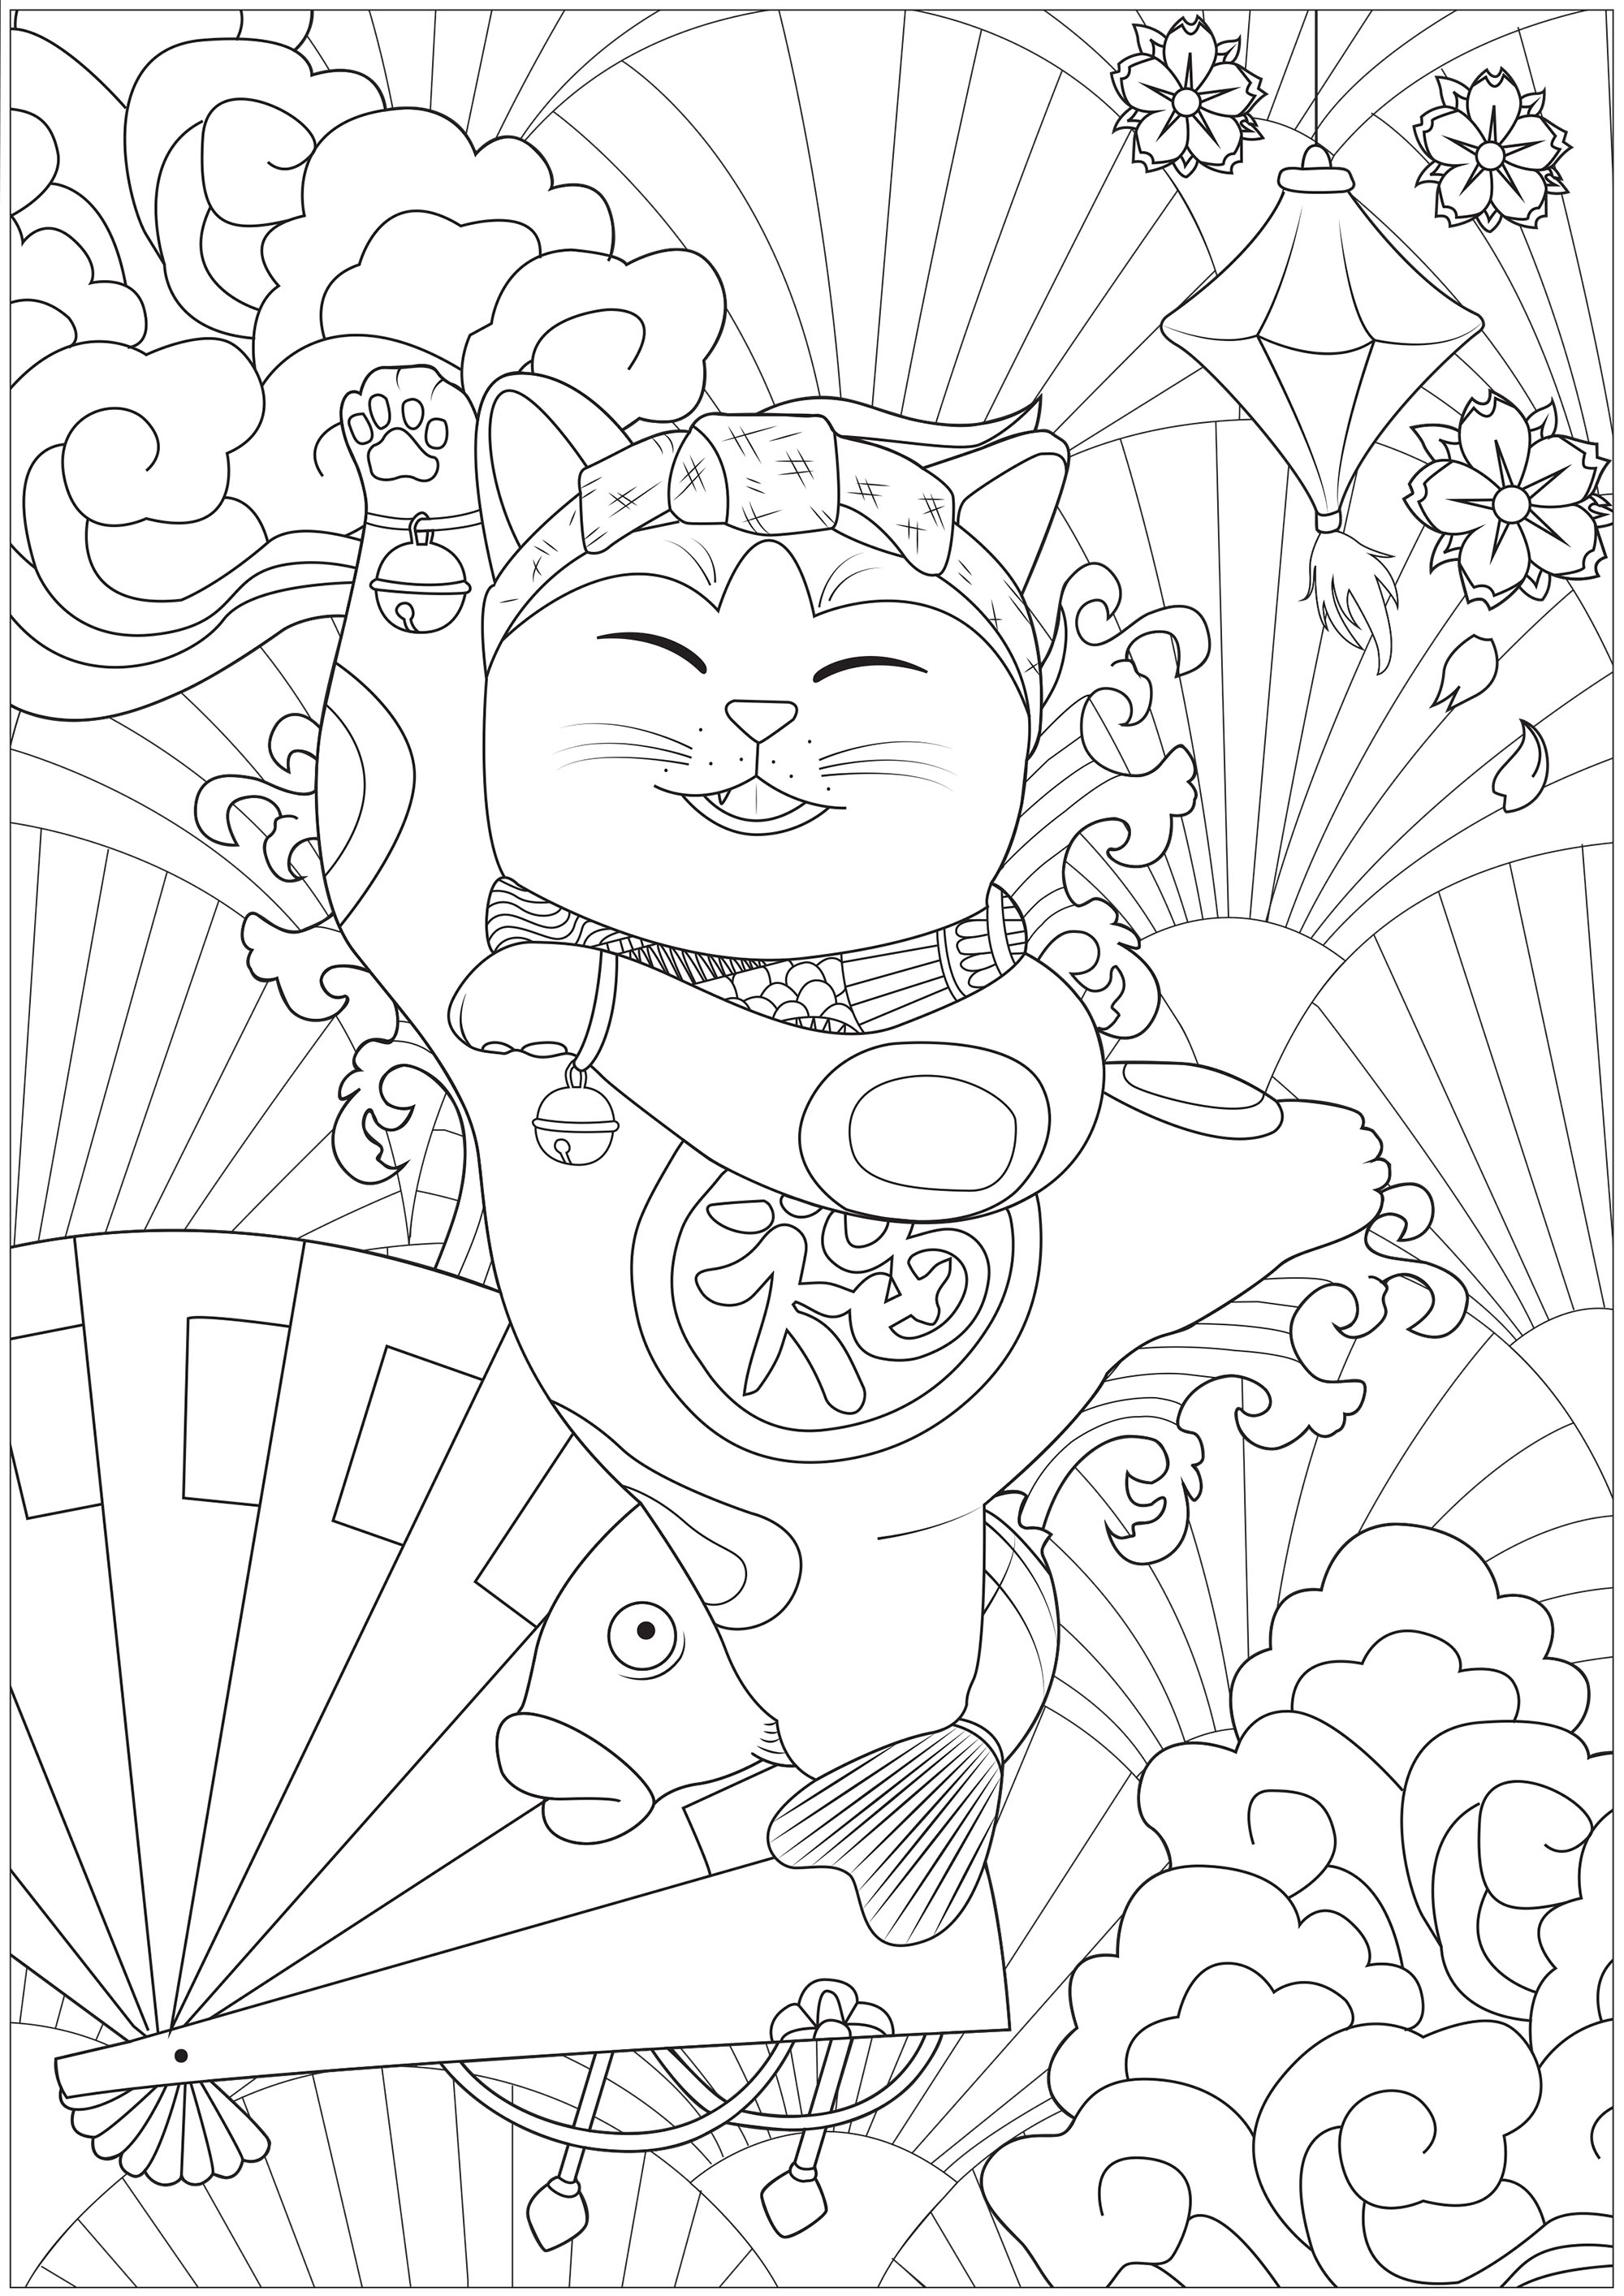 Dancing Maneki Neko cat - Japan Adult Coloring Pages